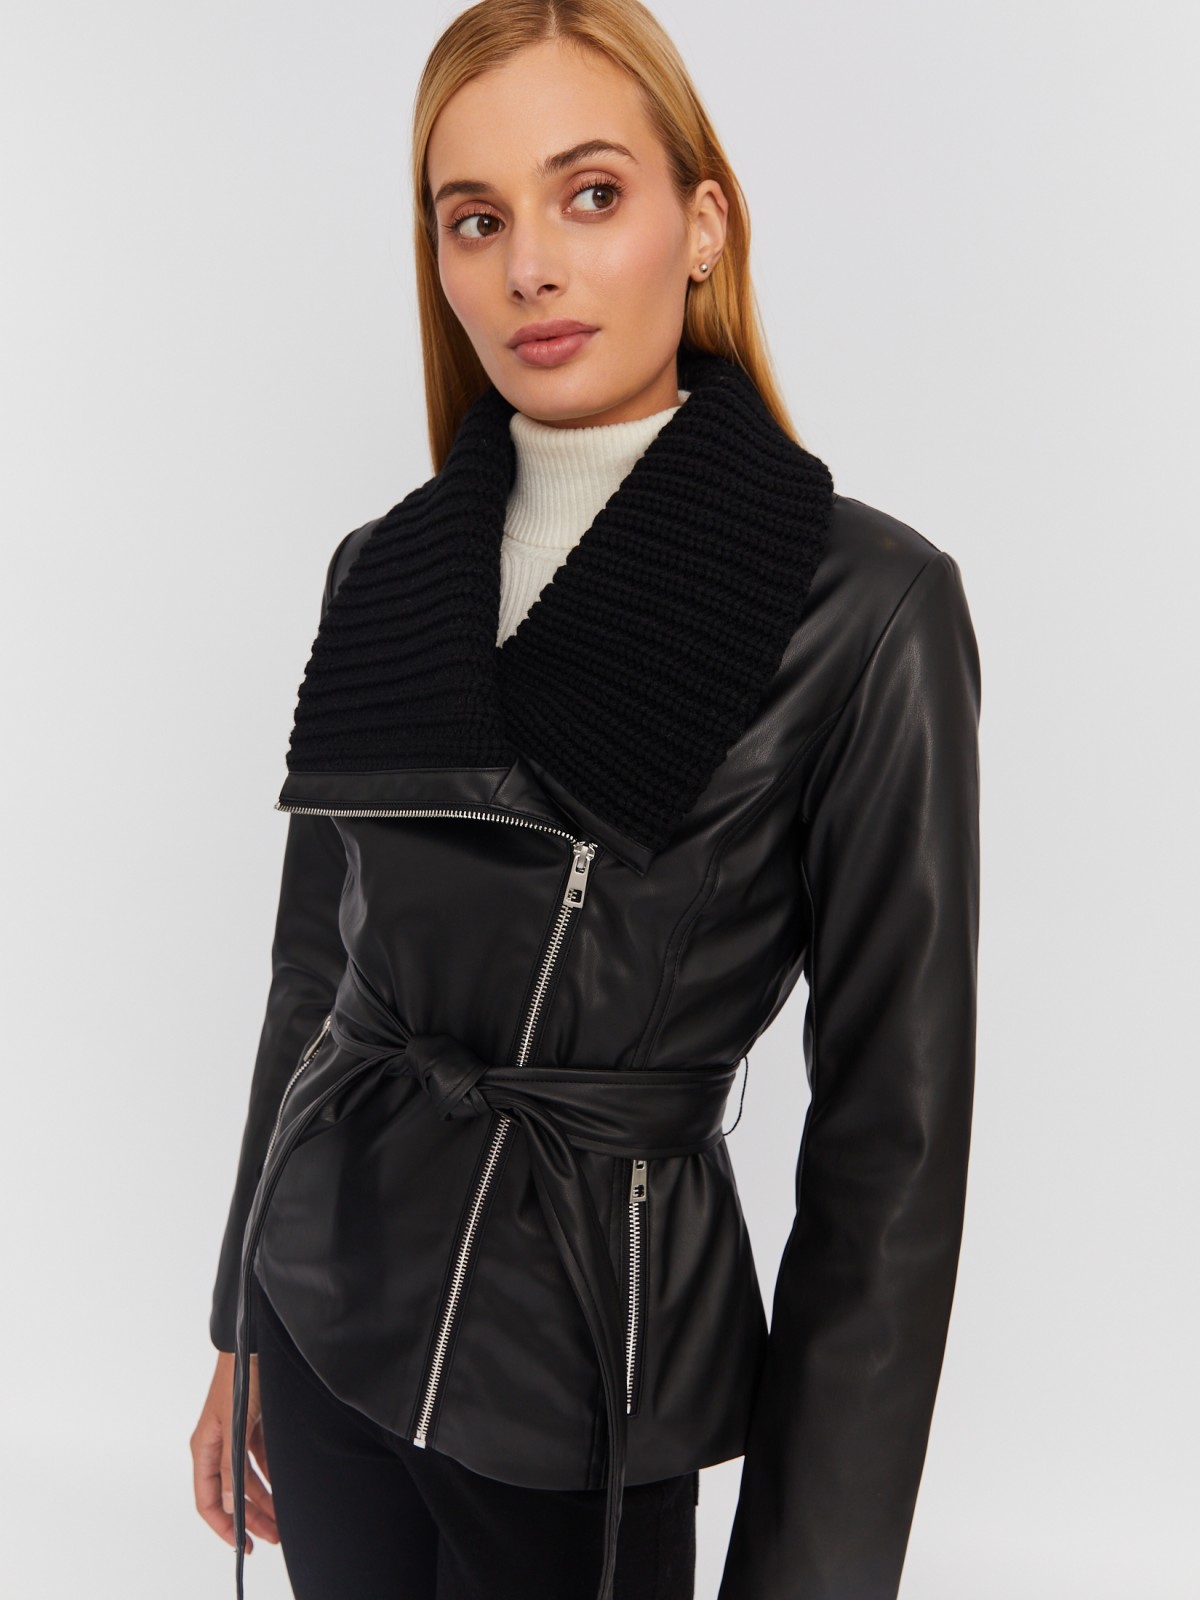 Тёплая куртка-косуха из экокожи на синтепоне с поясом zolla 023335150014, цвет черный, размер M - фото 3